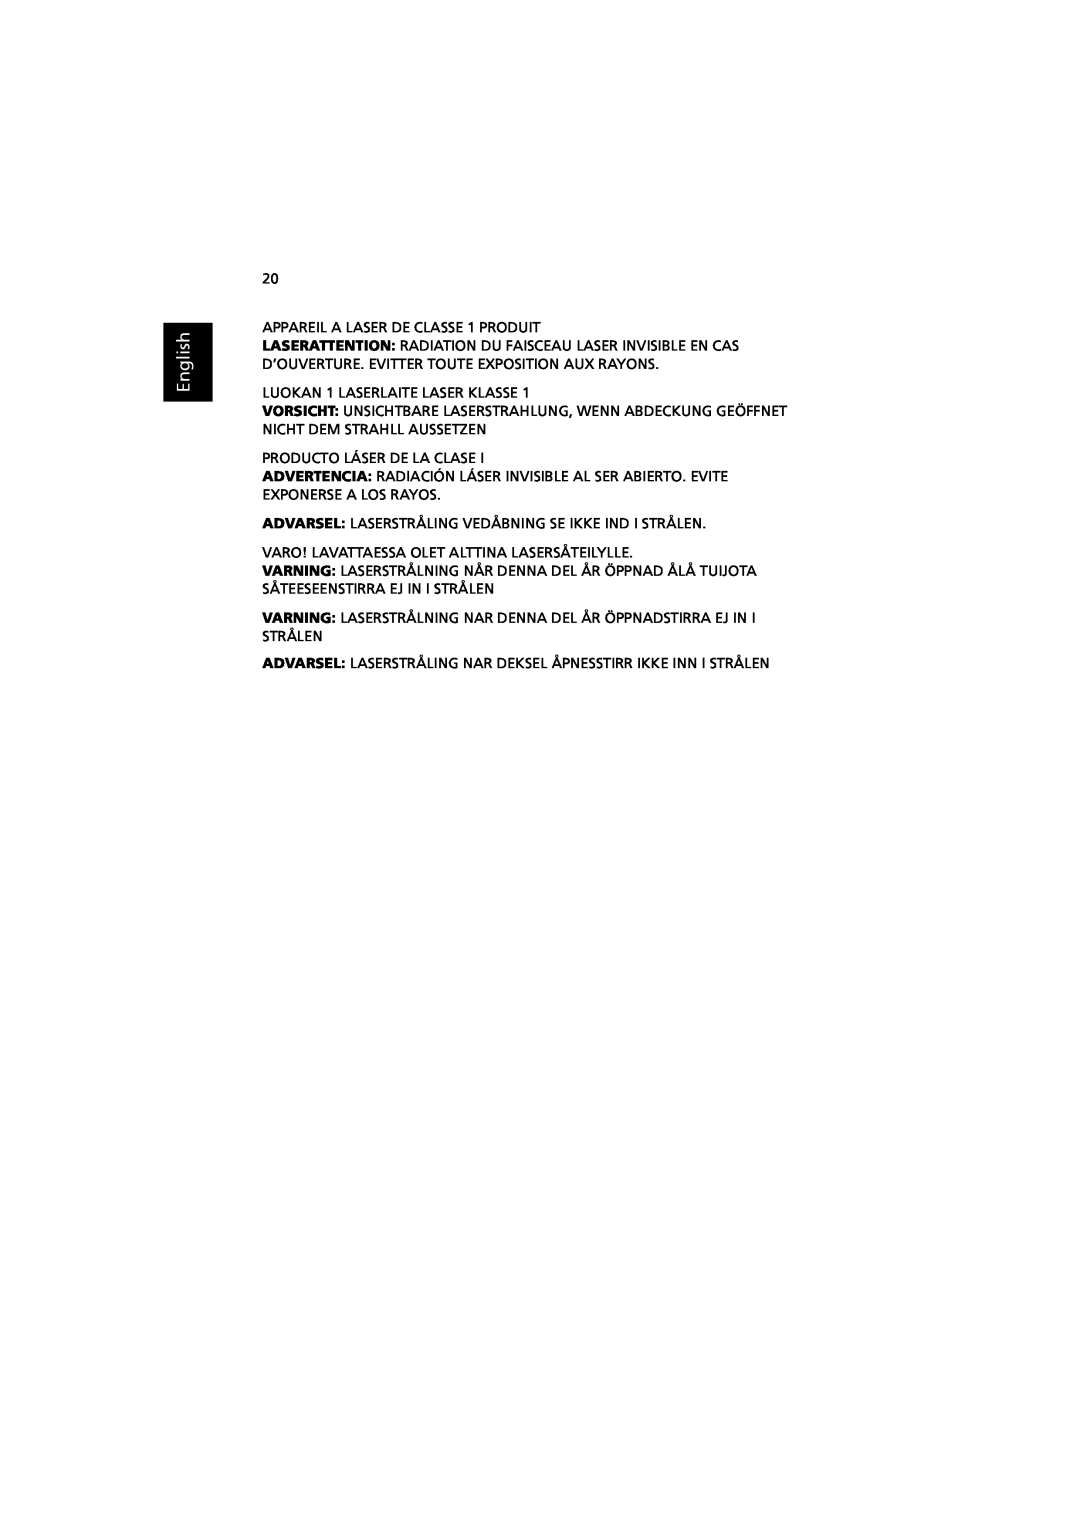 Acer RC810 manual English, APPAREIL A LASER DE CLASSE 1 PRODUIT 